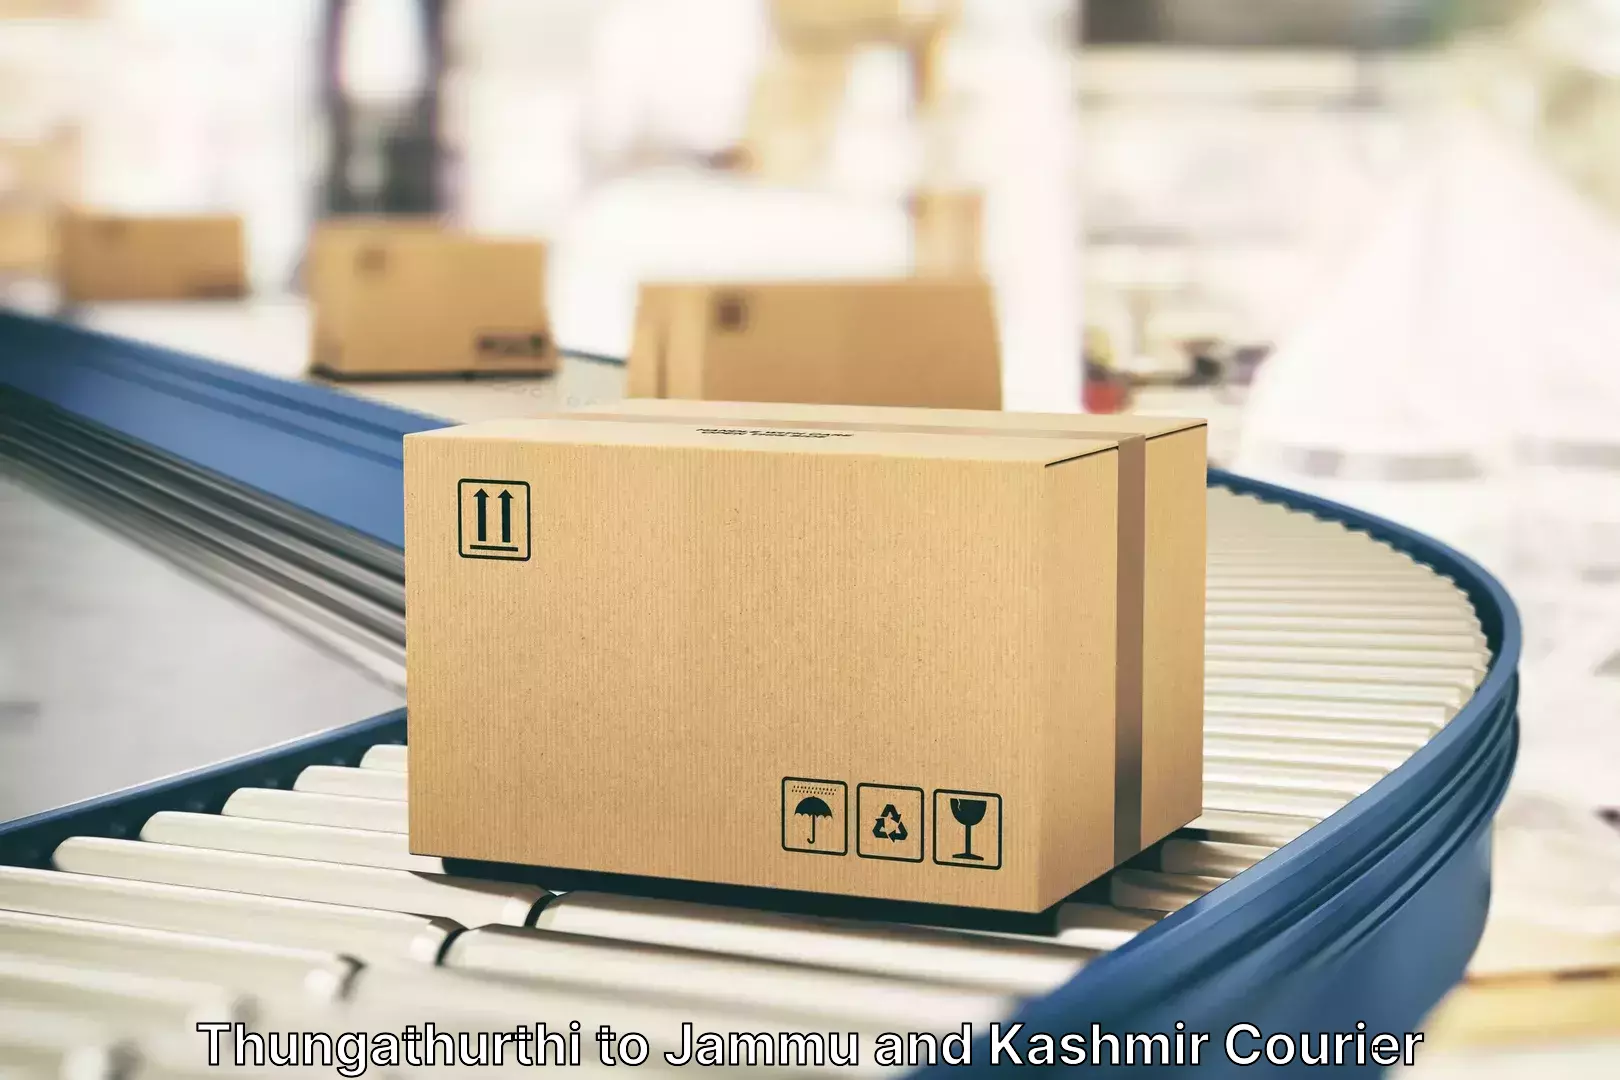 Streamlined baggage delivery Thungathurthi to University of Jammu